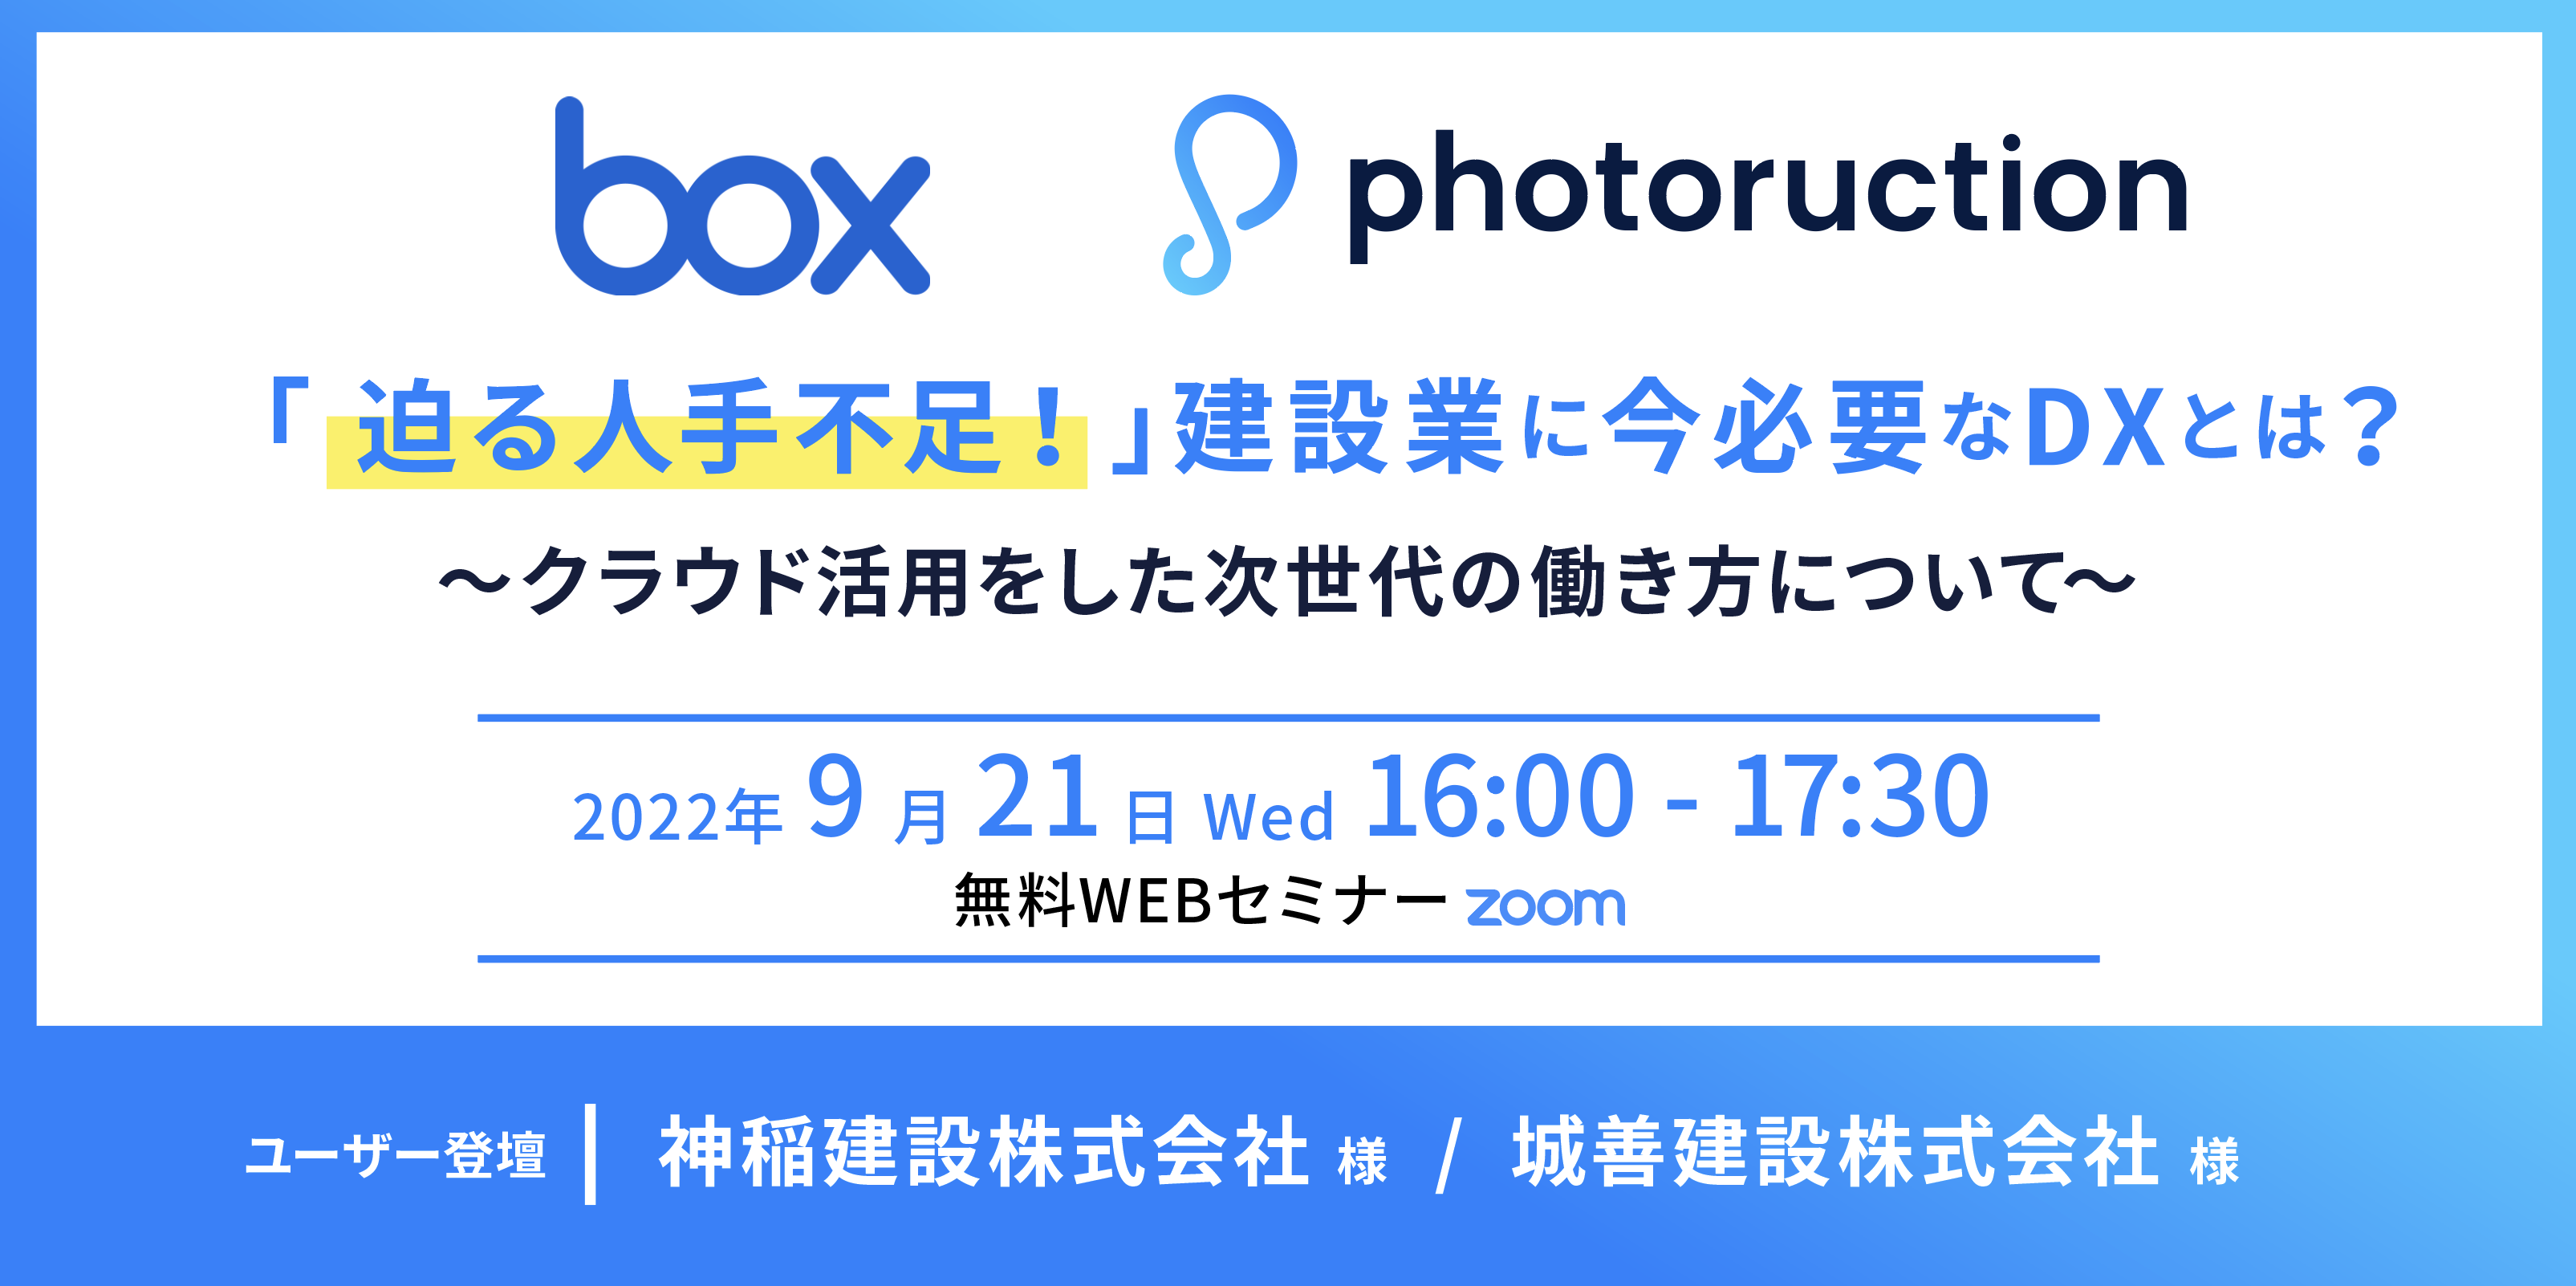 box_photoruction_共催ウェビナーbanner